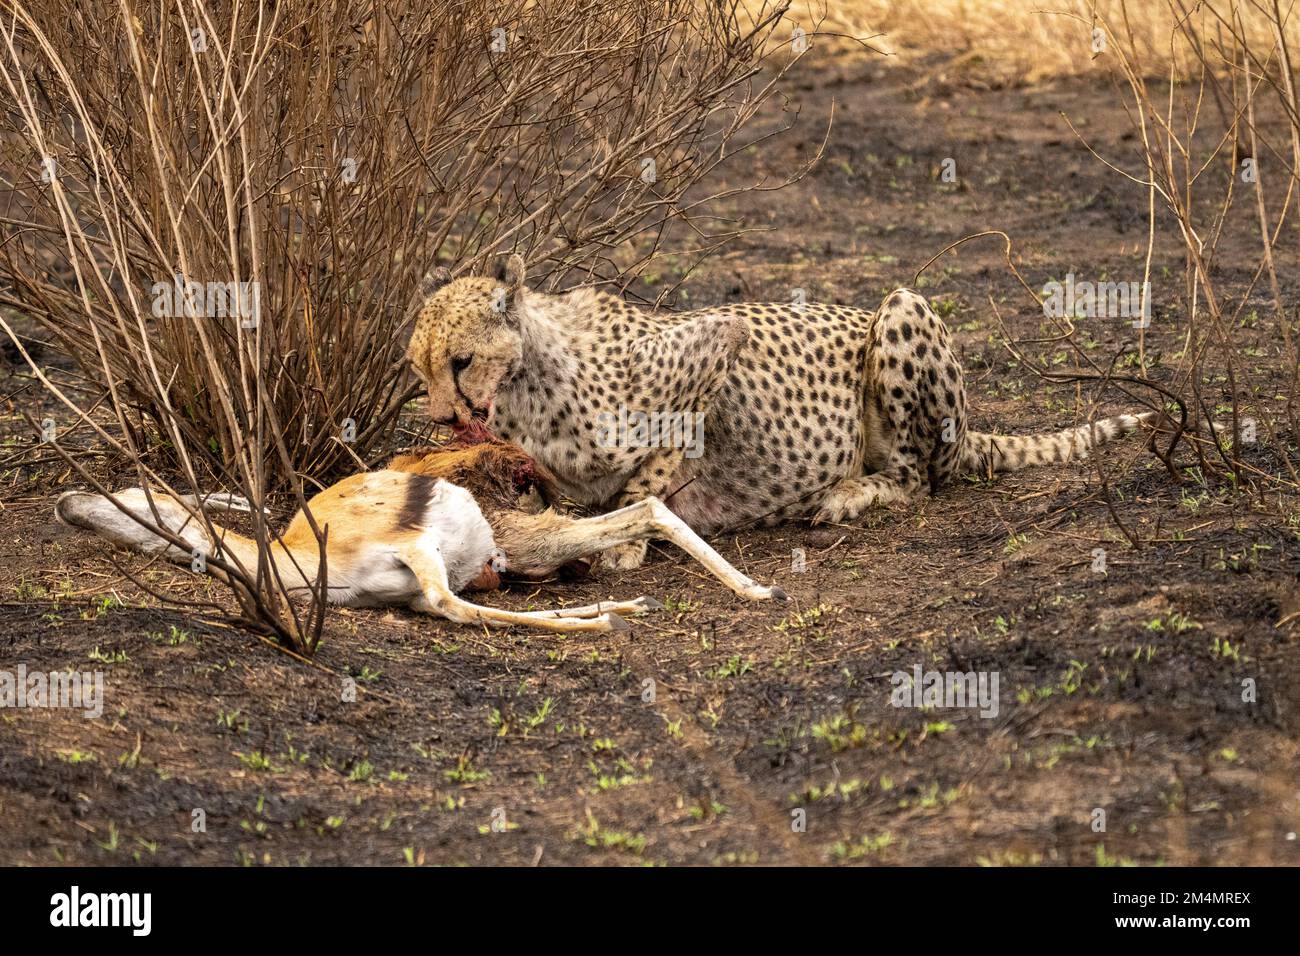 Cheetah se nourrissant d'une gazelle de Thomson chassée photographiée en Tanzanie Banque D'Images